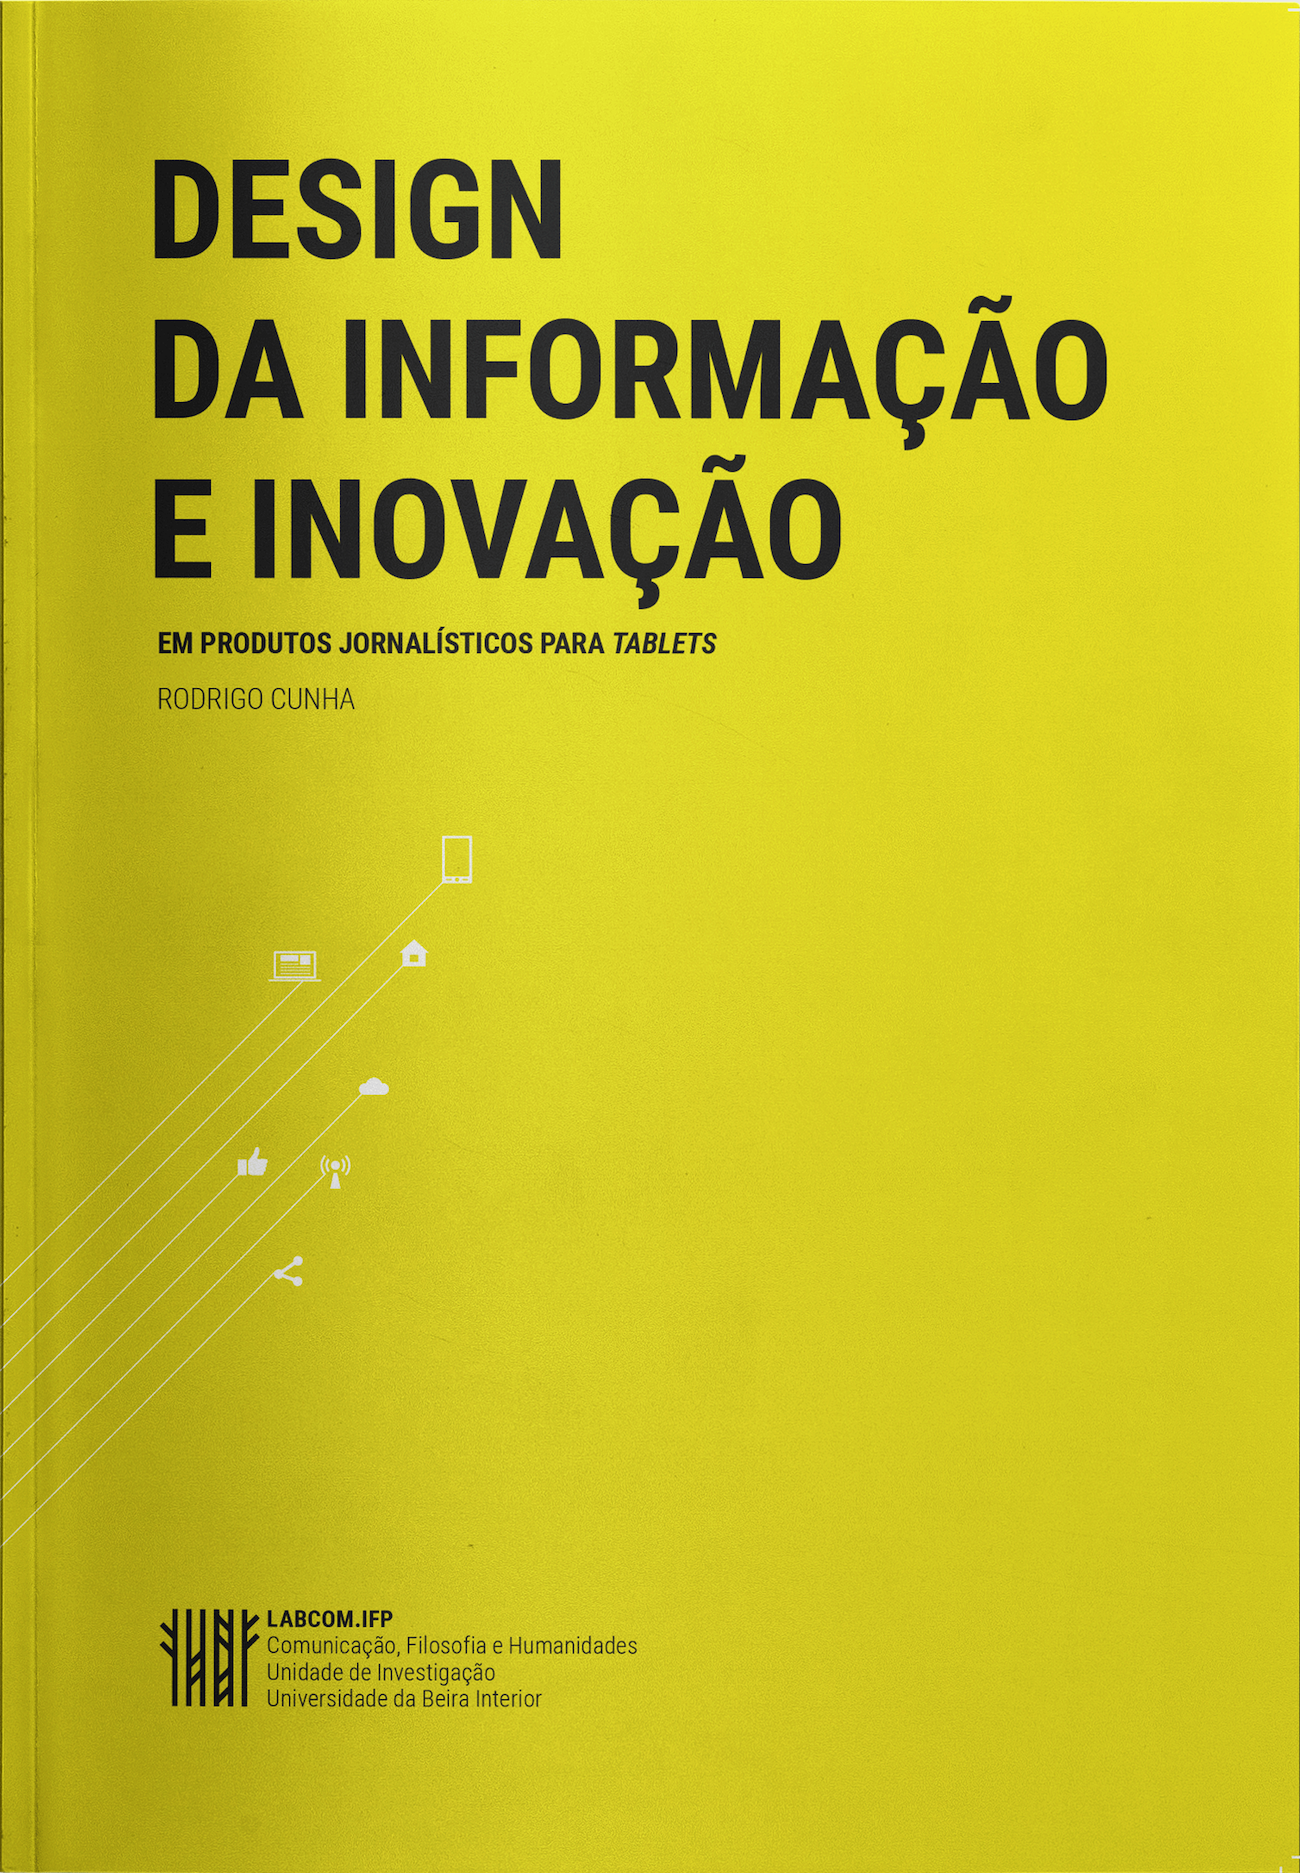 Capa: Rodrigo Cunha (2017) Design da Informação e Inovação em Produtos Jornalísticos para Tablets. Communication  +  Philosophy  +  Humanities. .